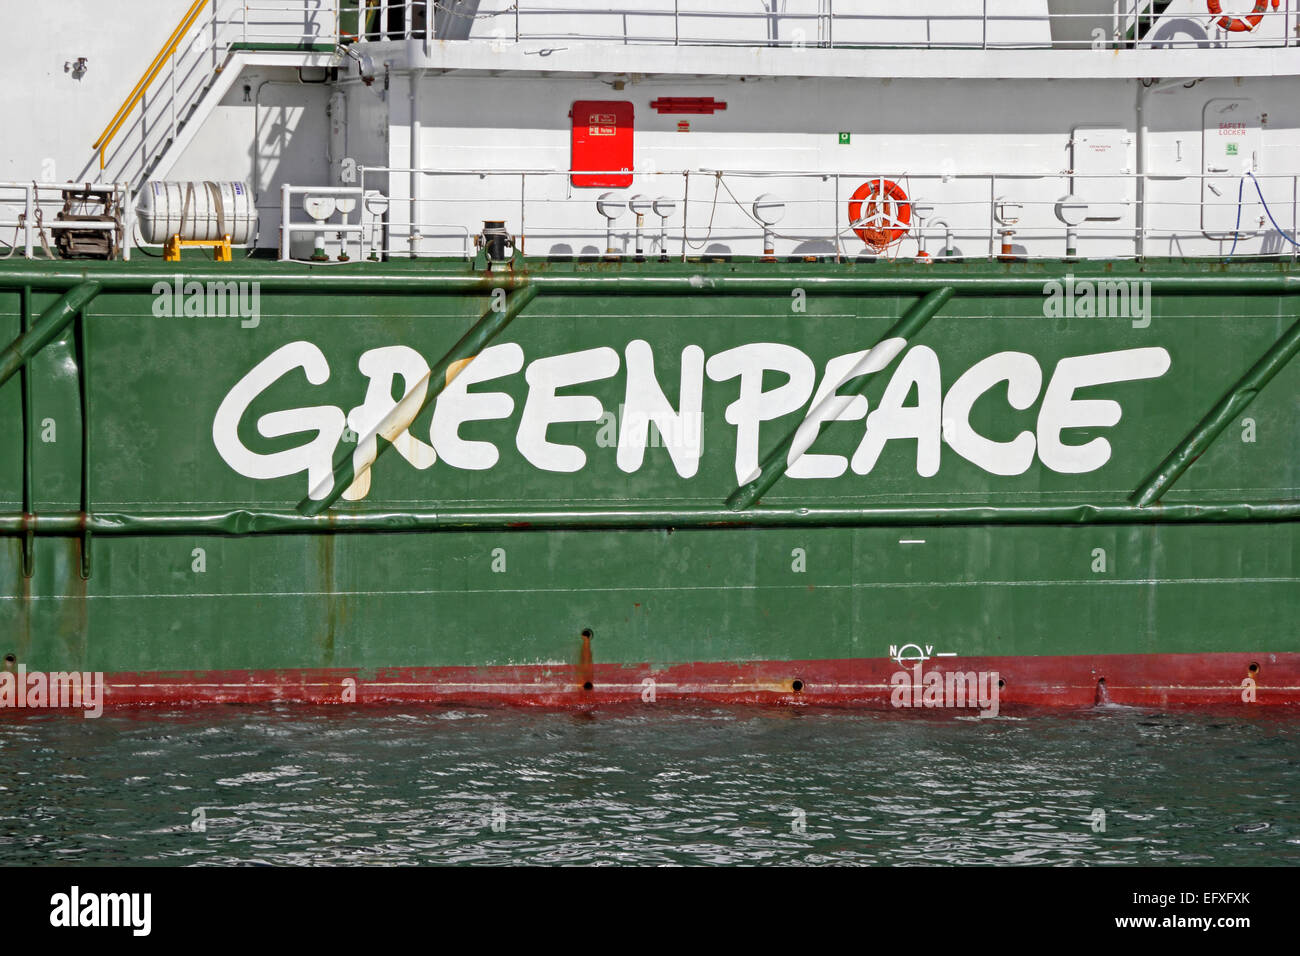 Greenpeace ship, Esperanza, moored in Grand Harbour, Valletta, Malta Stock Photo